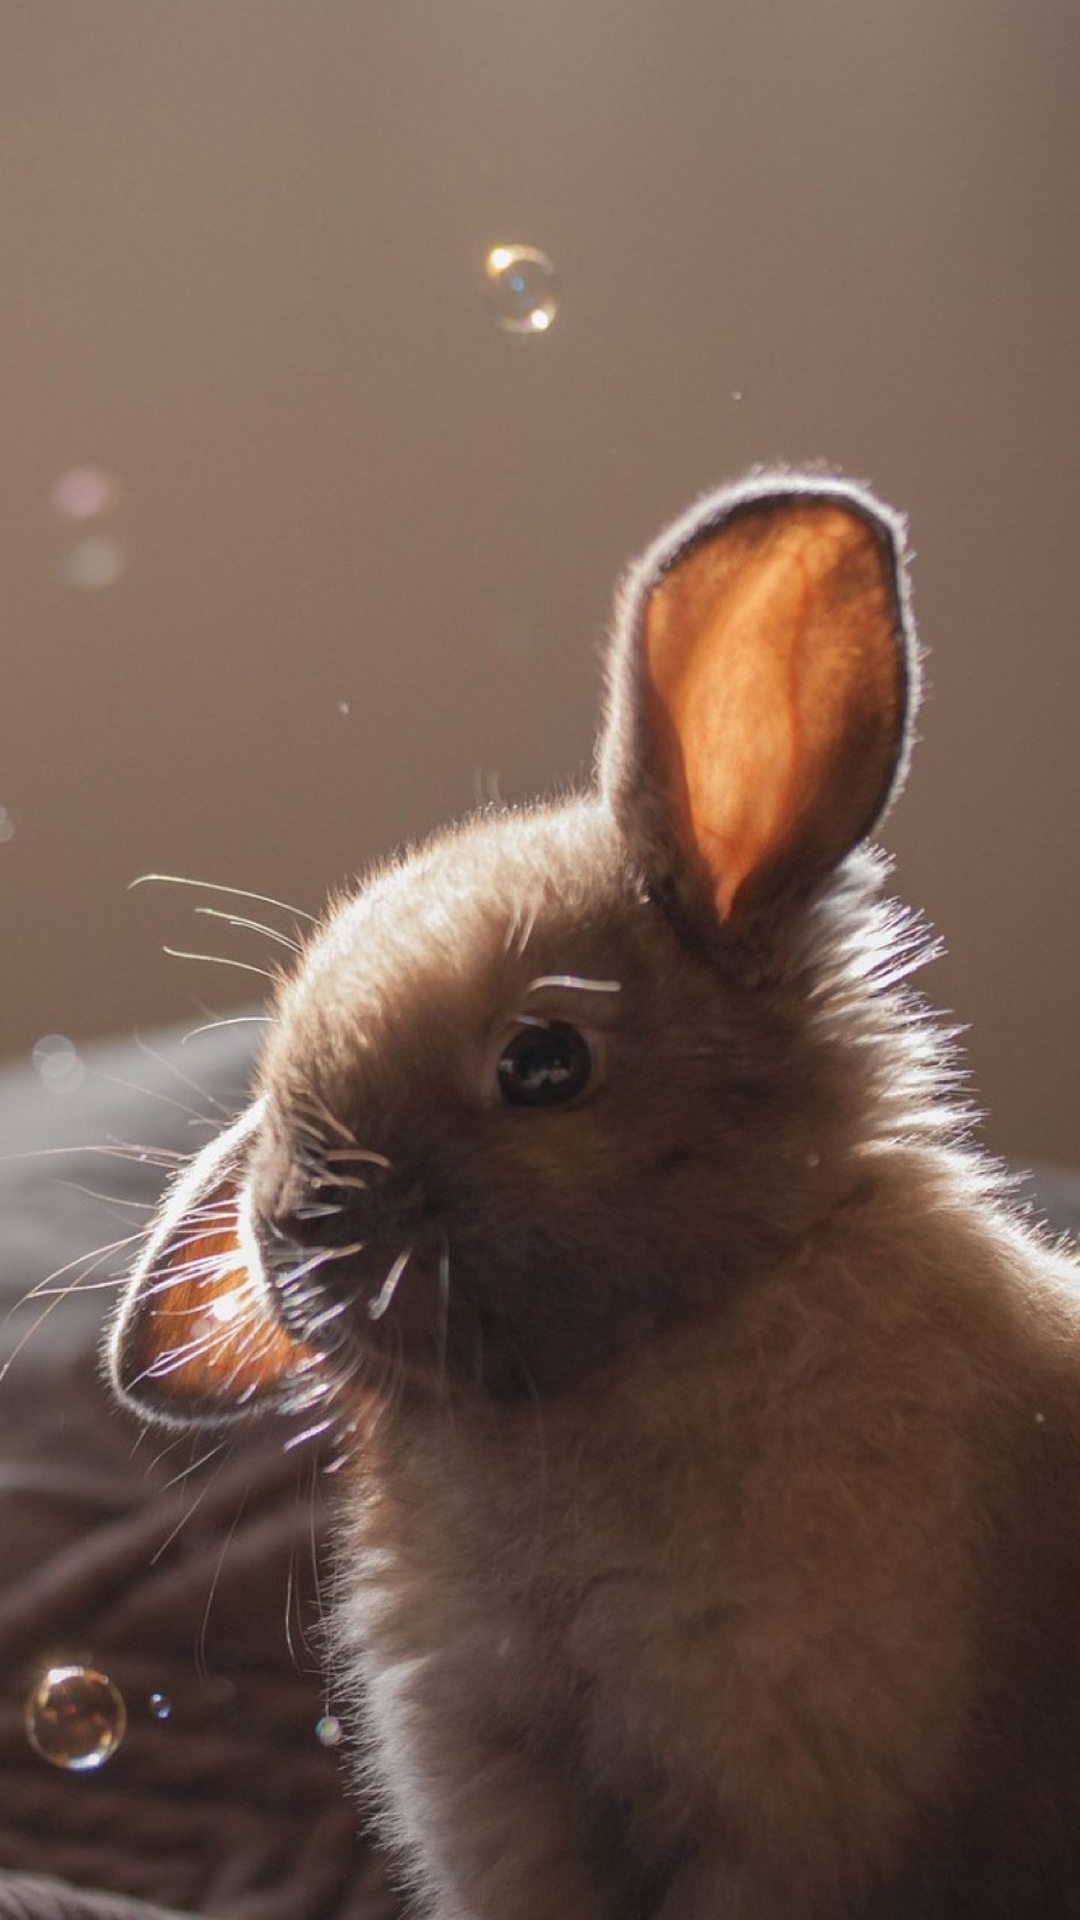 Cute Bunny Soap Bubbles iPhone 6 wallpaper